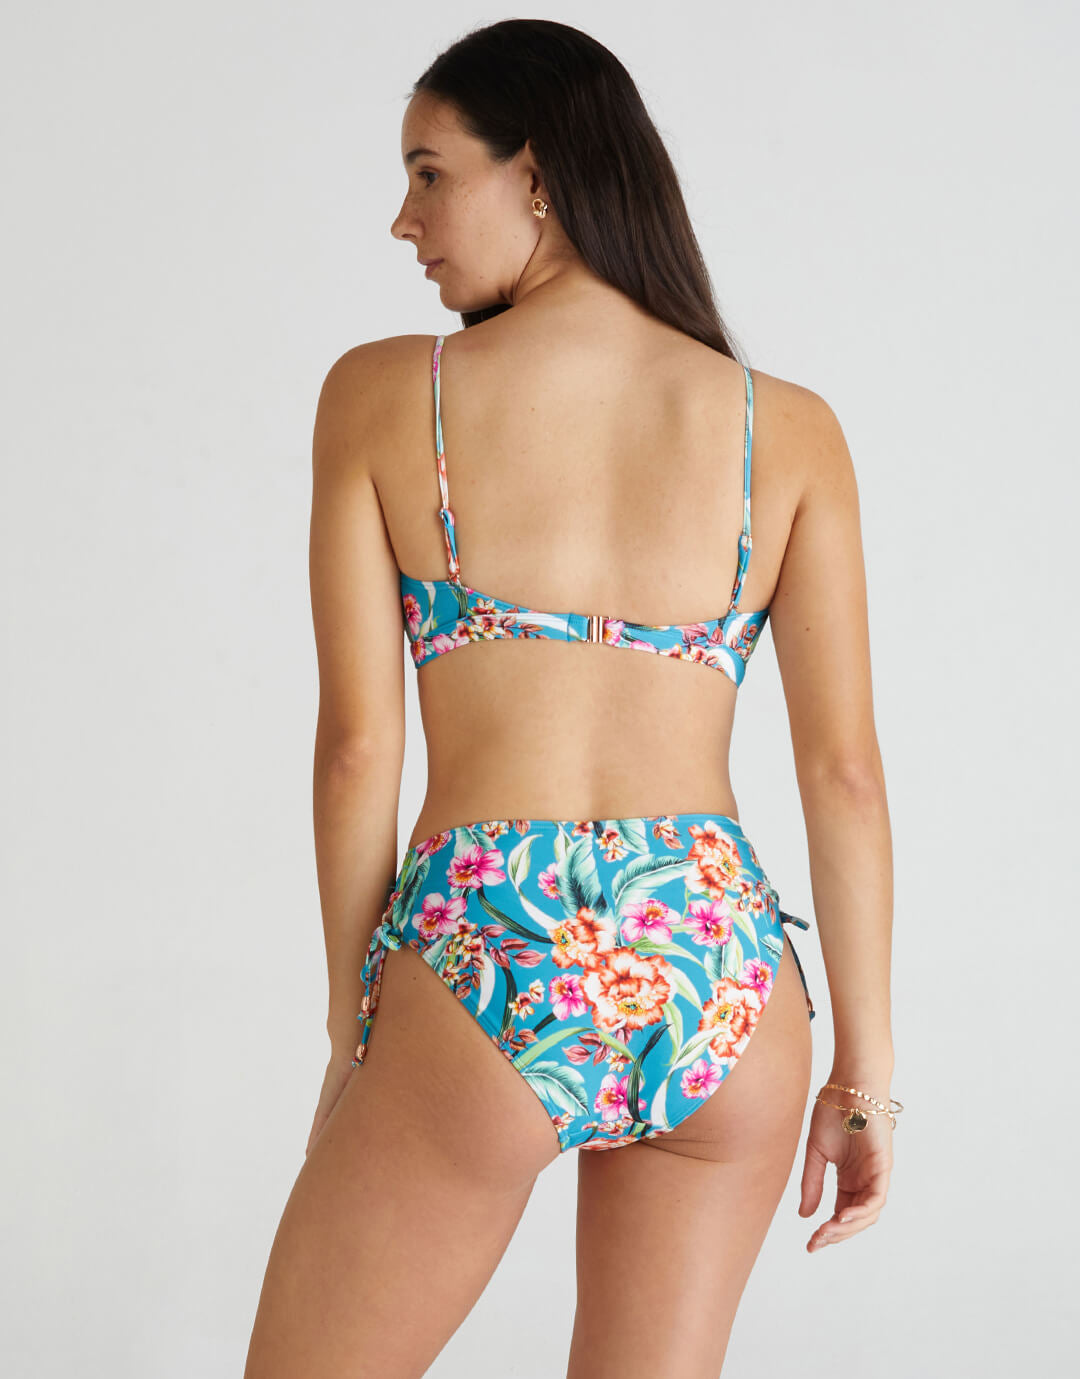 Melody Charlotte High Waist Bikini Pant - Multi - Simply Beach UK